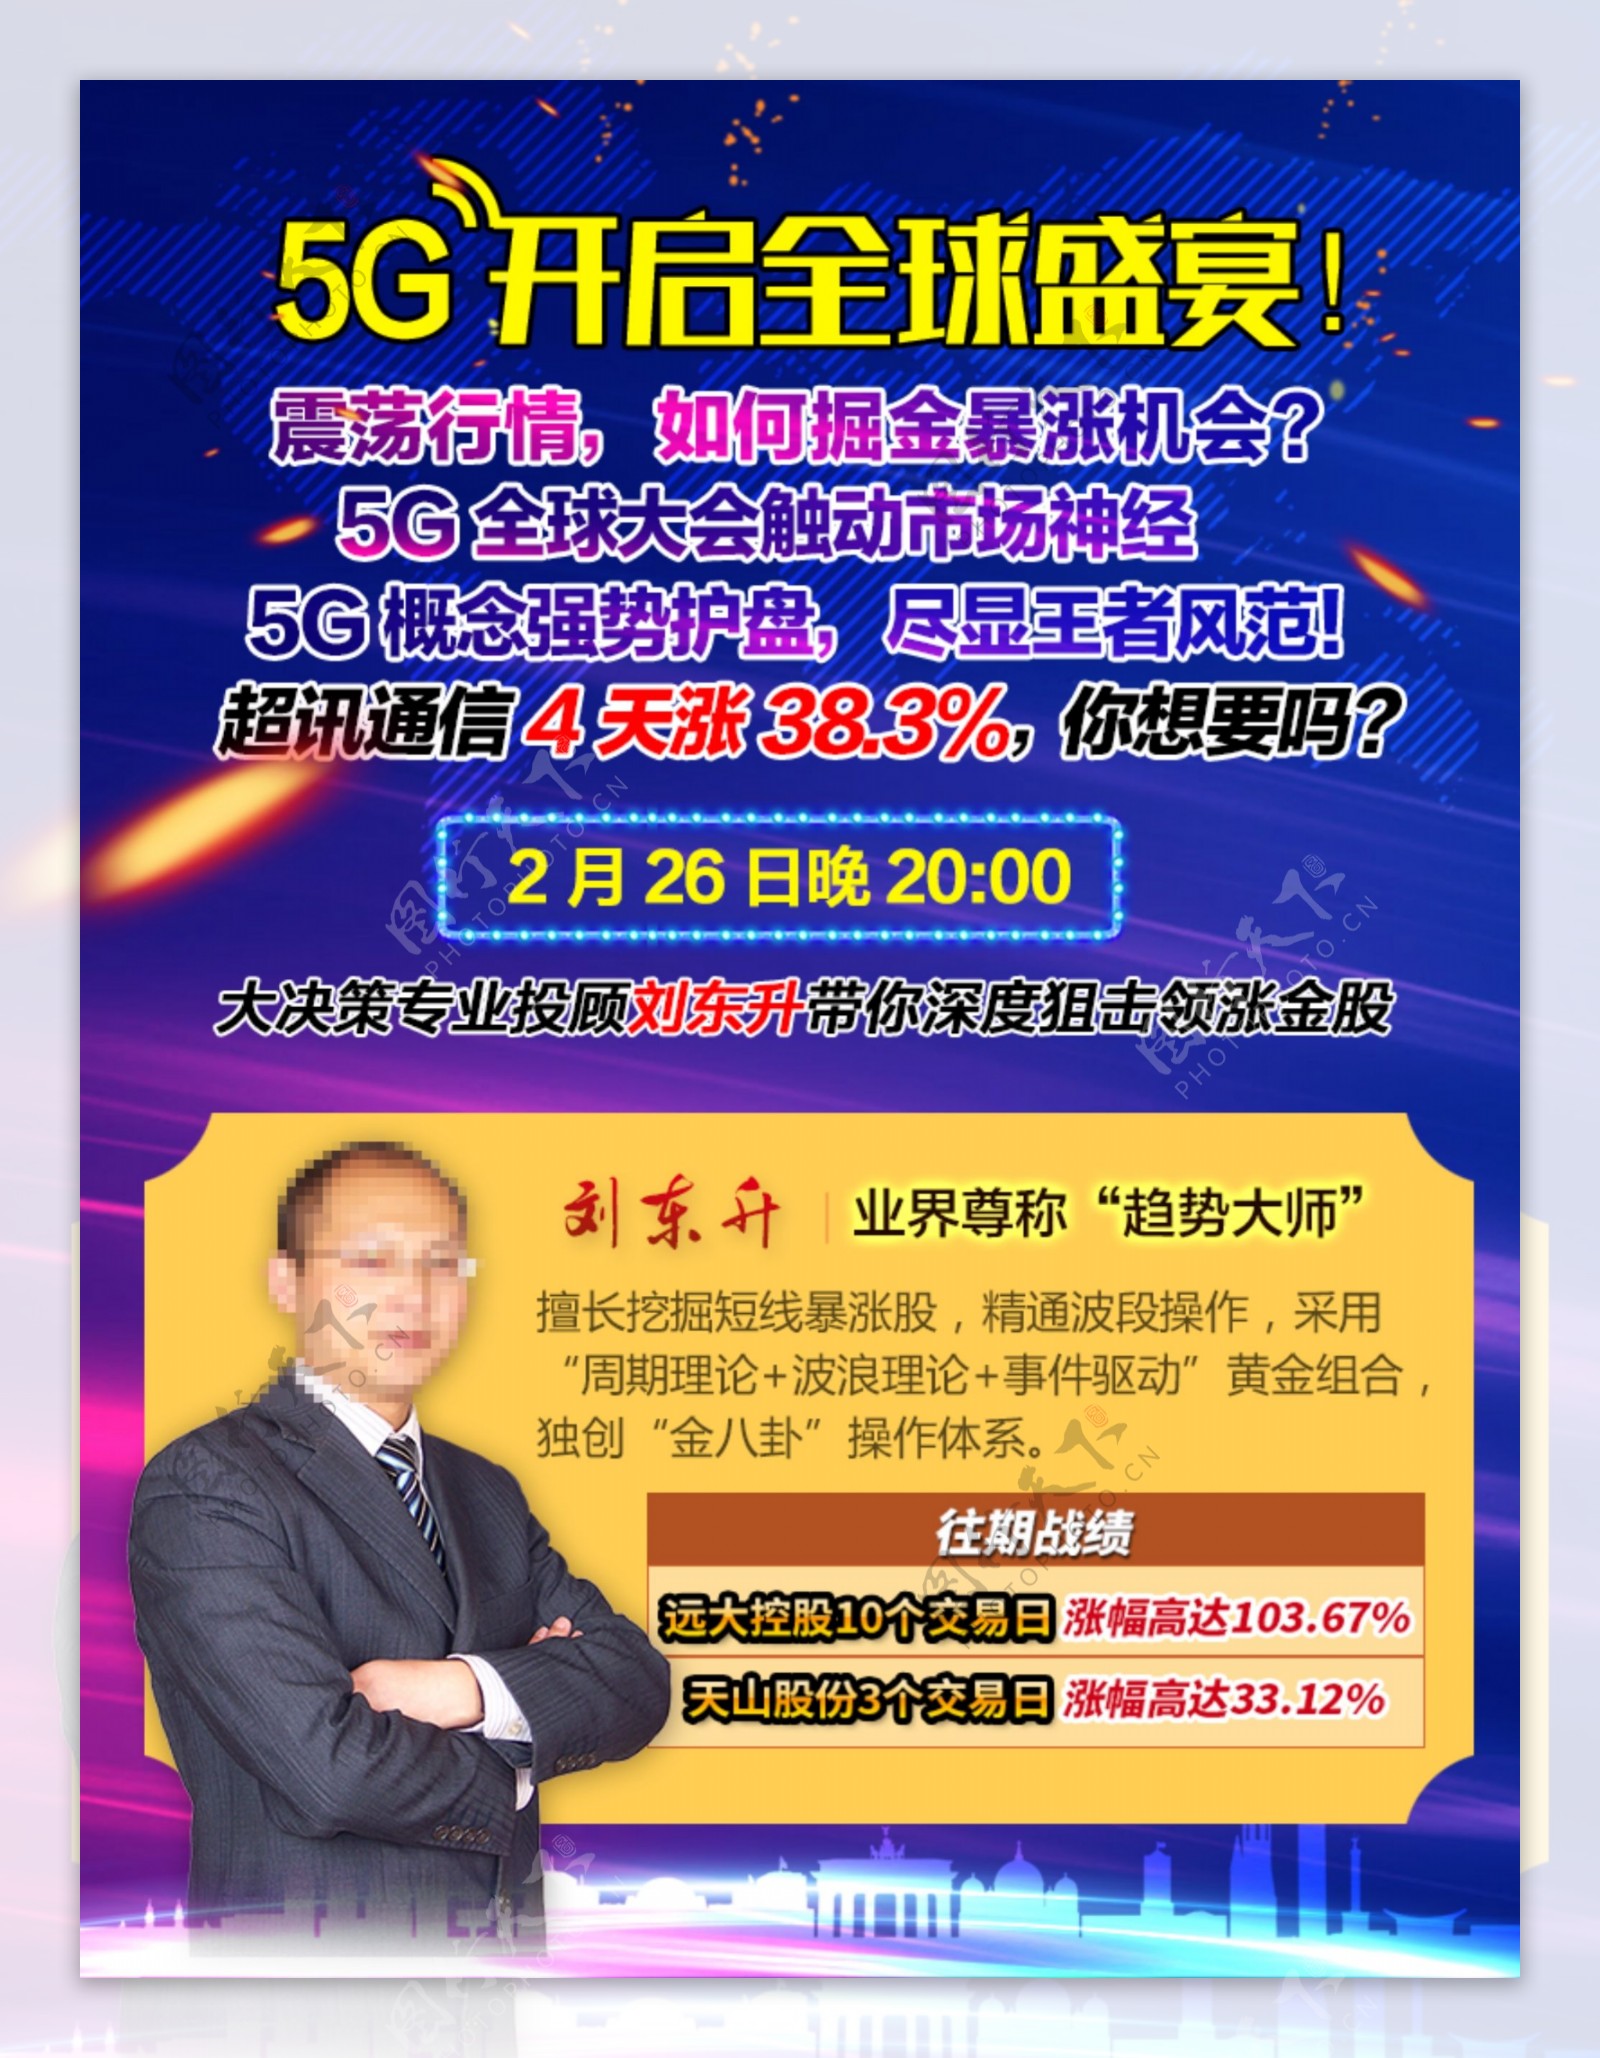 5G开启全球盛宴